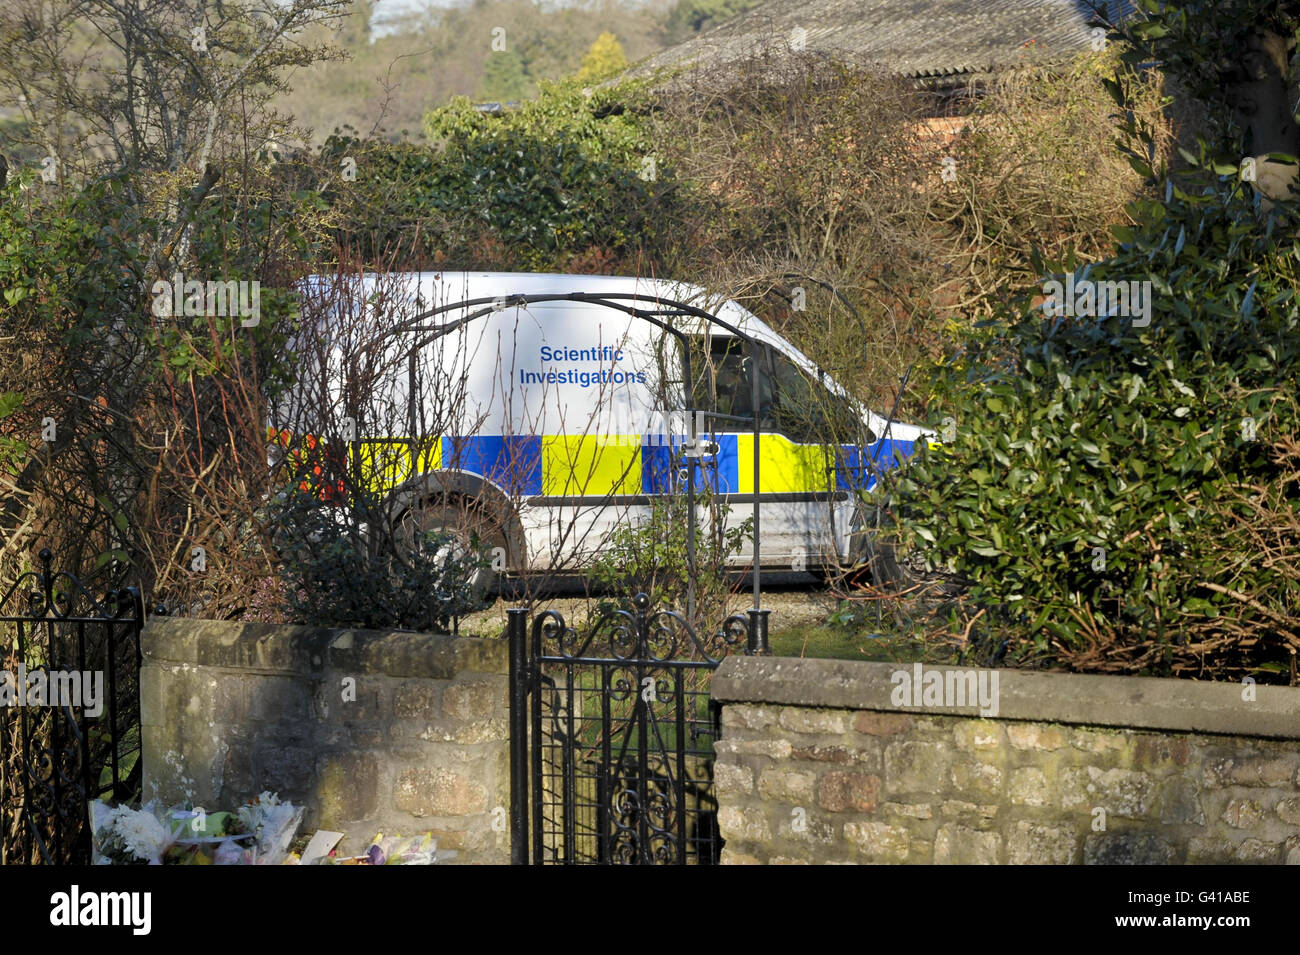 Un véhicule des enquêtes scientifiques de la police arrive à l'extérieur de l'appartement où Joanna Yeates habitait sur Canynge Road, qui a été fermé, à Bristol, après qu'un homme de 32 ans ait été arrêté pour suspicion de son meurtre aujourd'hui. Banque D'Images